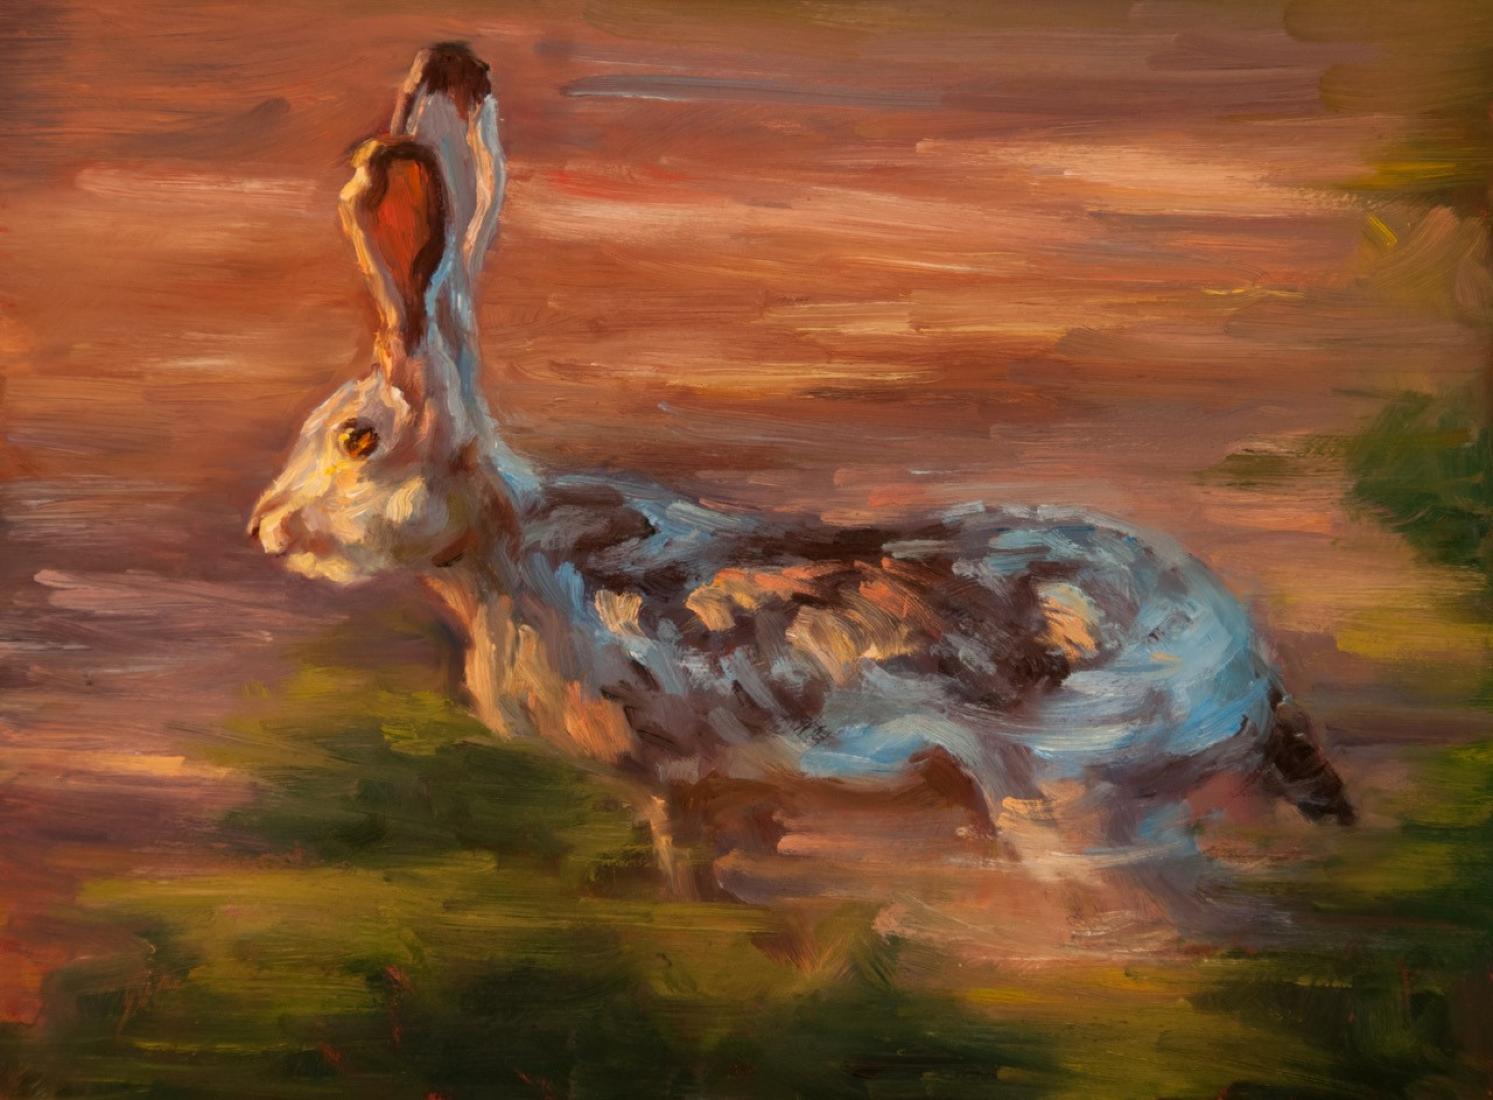 Jack, Jackrabbit, Hare, Ölgemälde, Impressionismus, Big Bend Park, texanischer Künstler – Painting von Cheri Christensen